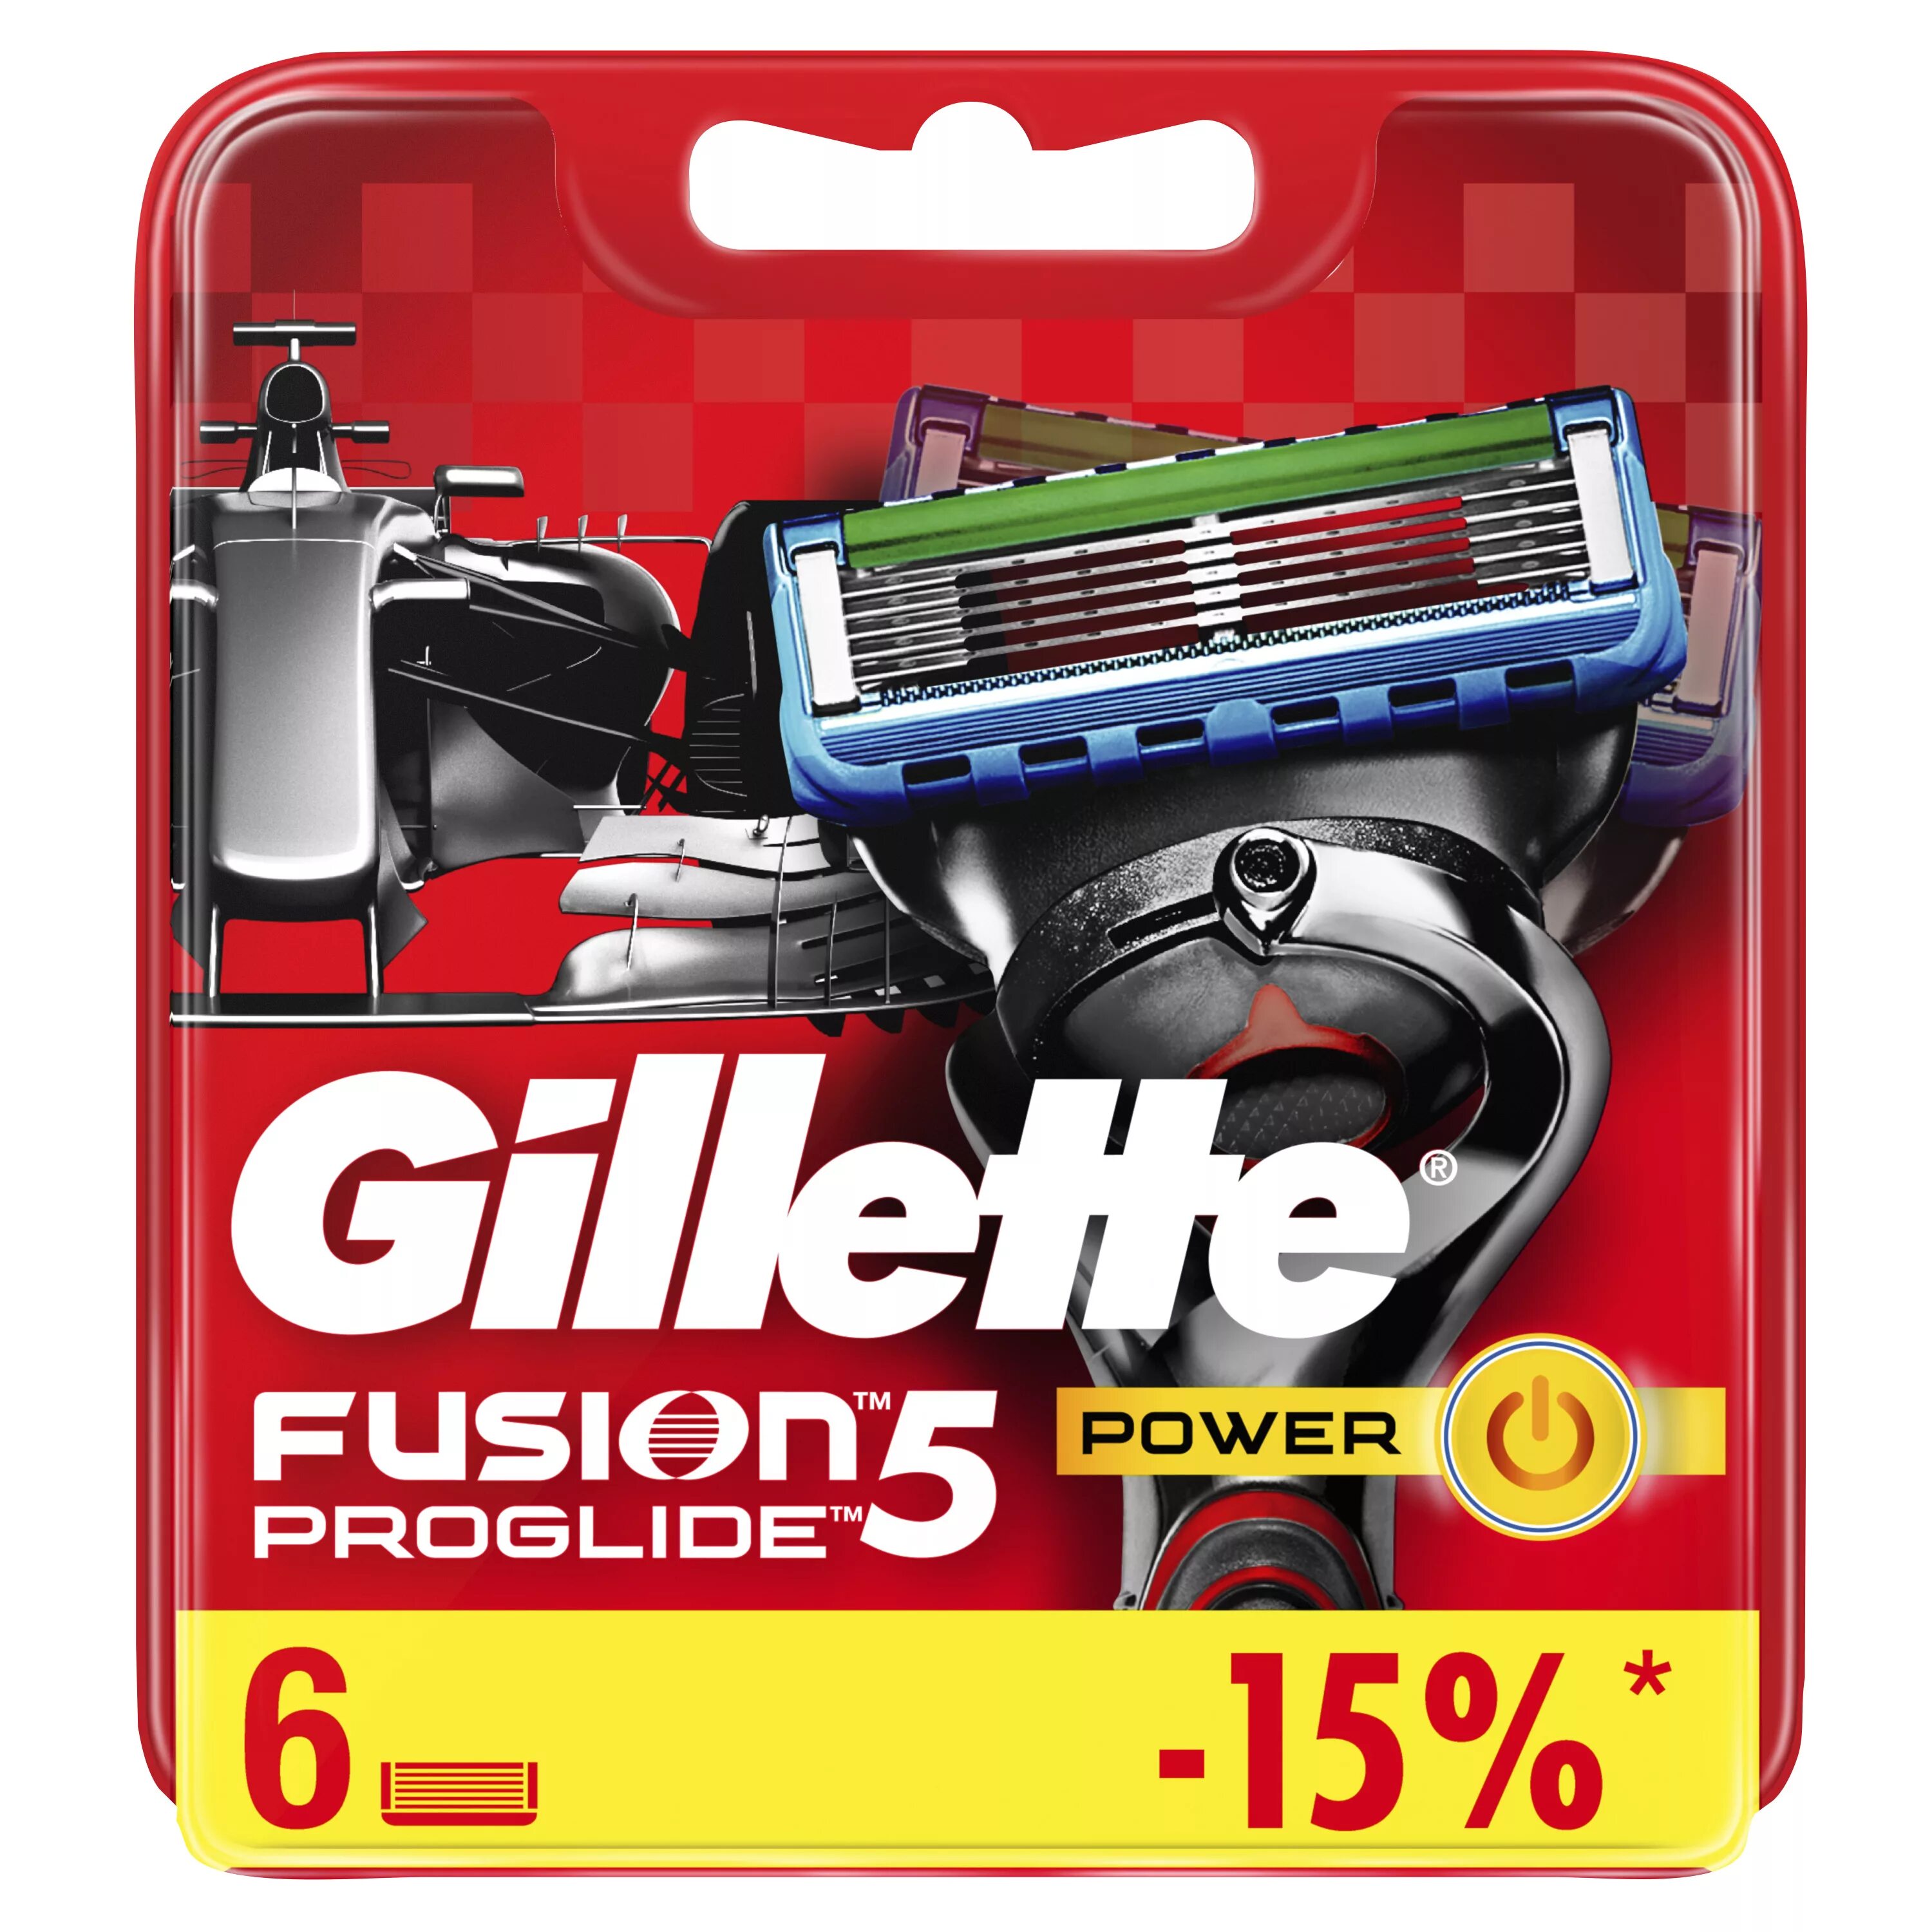 Кассеты для бритья фьюжен 5. Касеты жилет Проглайт Фьюжен 5. Fusion 5 PROGLIDE Power кассеты 8 шт. Джилет кассеты Fusion Fusion 5.